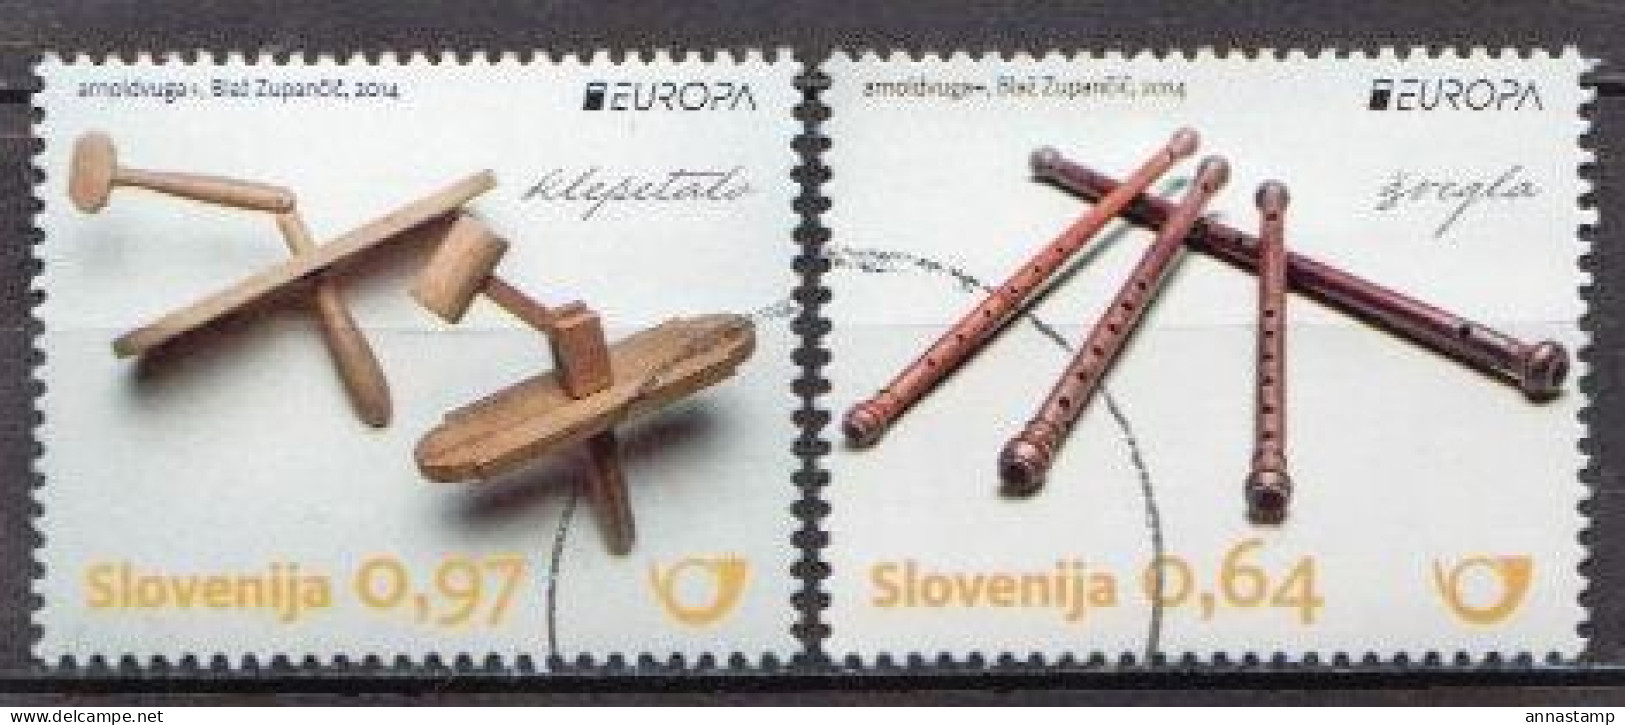 Slovenia MNH Pair, Specimen - Music